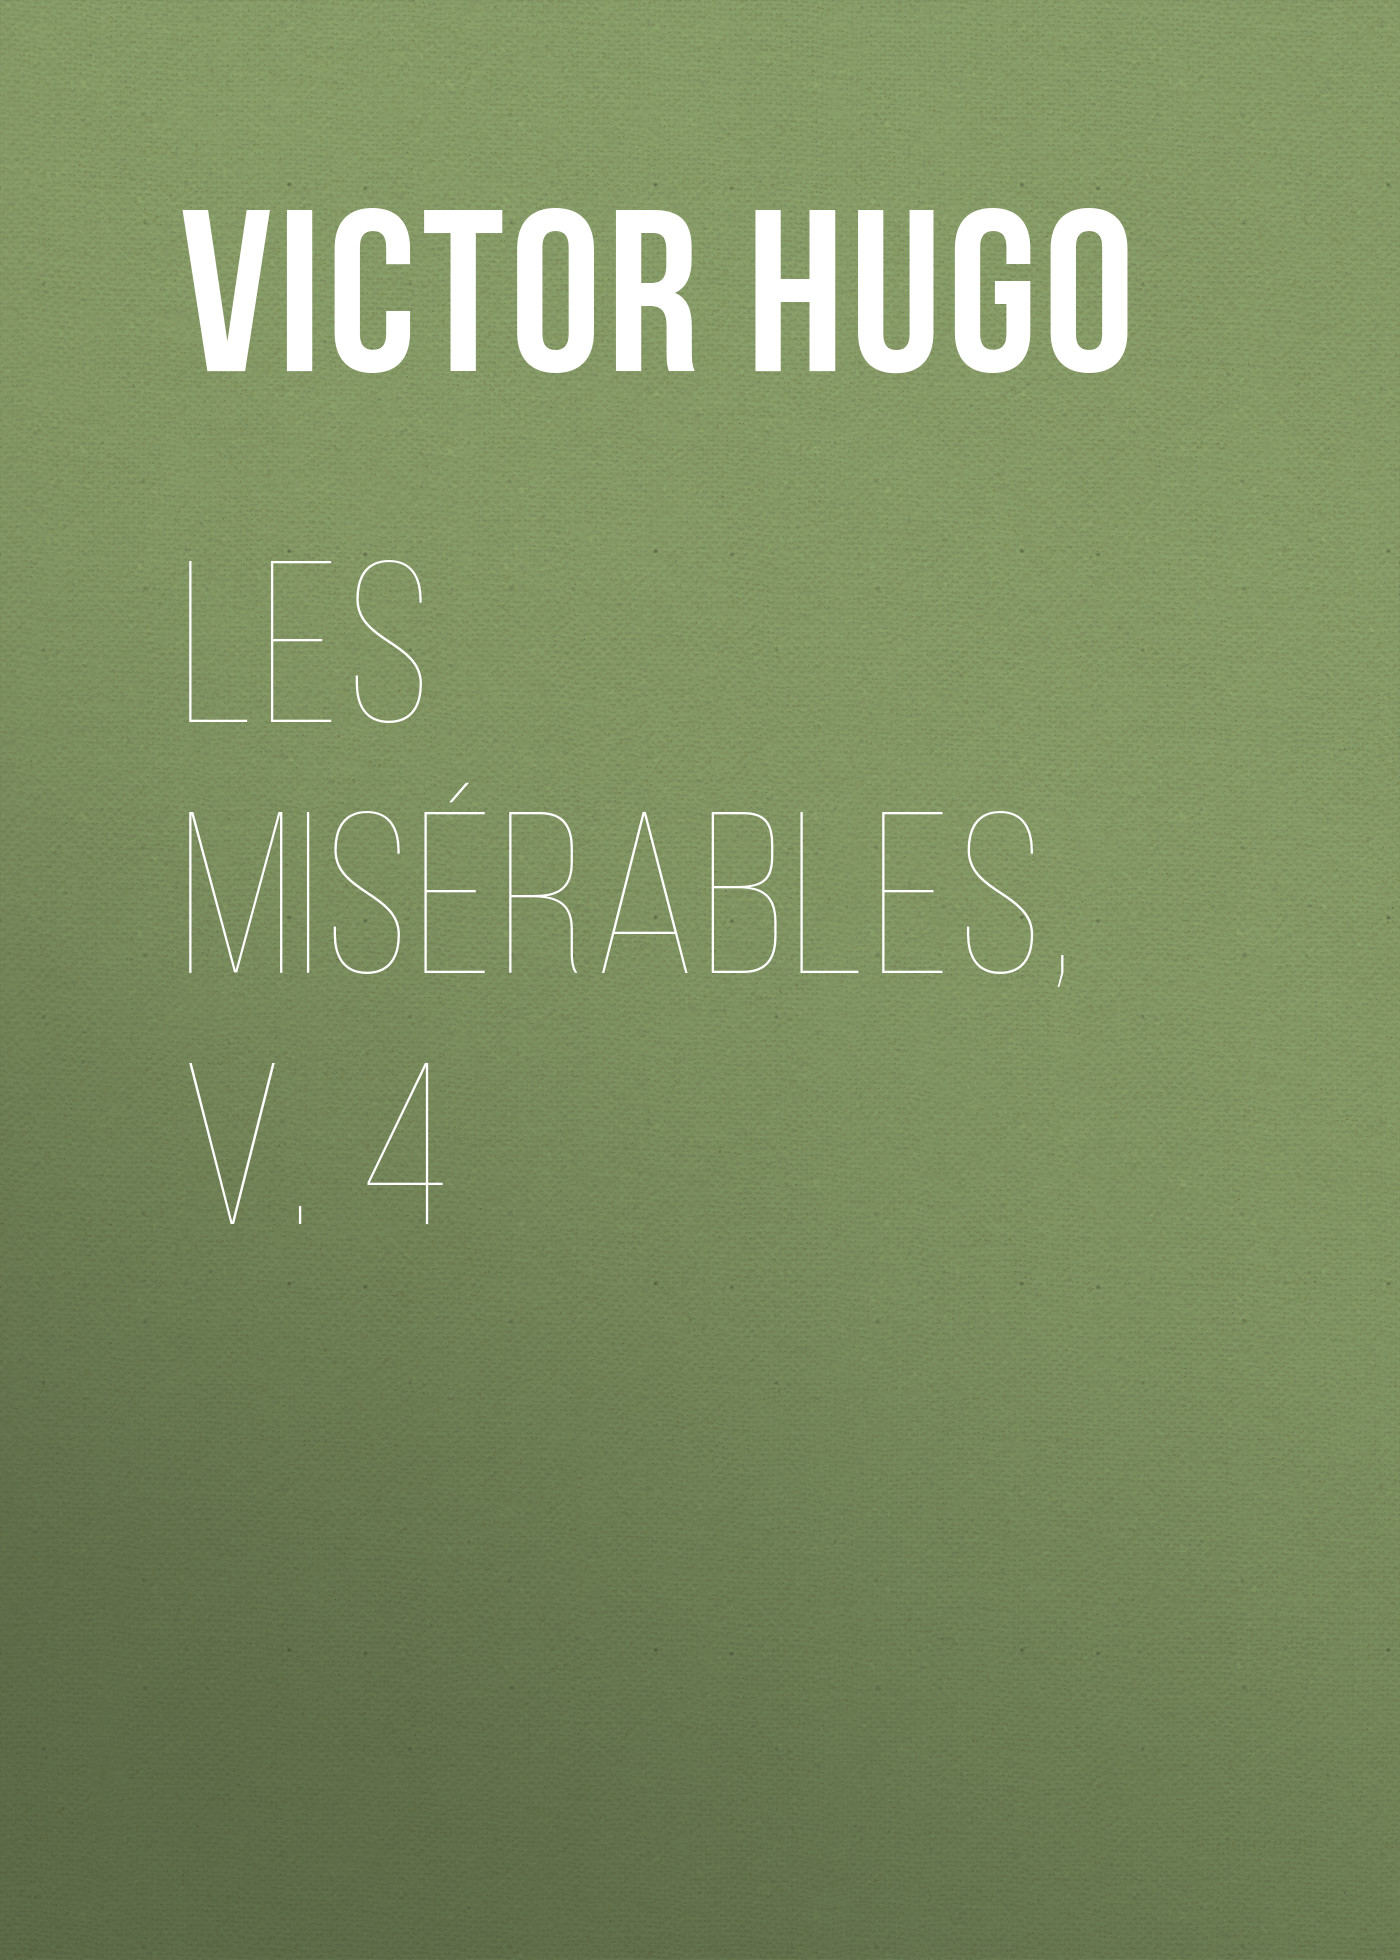 Книга Les Misérables, v. 4 из серии , созданная Victor Hugo, может относится к жанру Литература 19 века, Зарубежная старинная литература, Зарубежная классика. Стоимость электронной книги Les Misérables, v. 4 с идентификатором 25230356 составляет 0 руб.